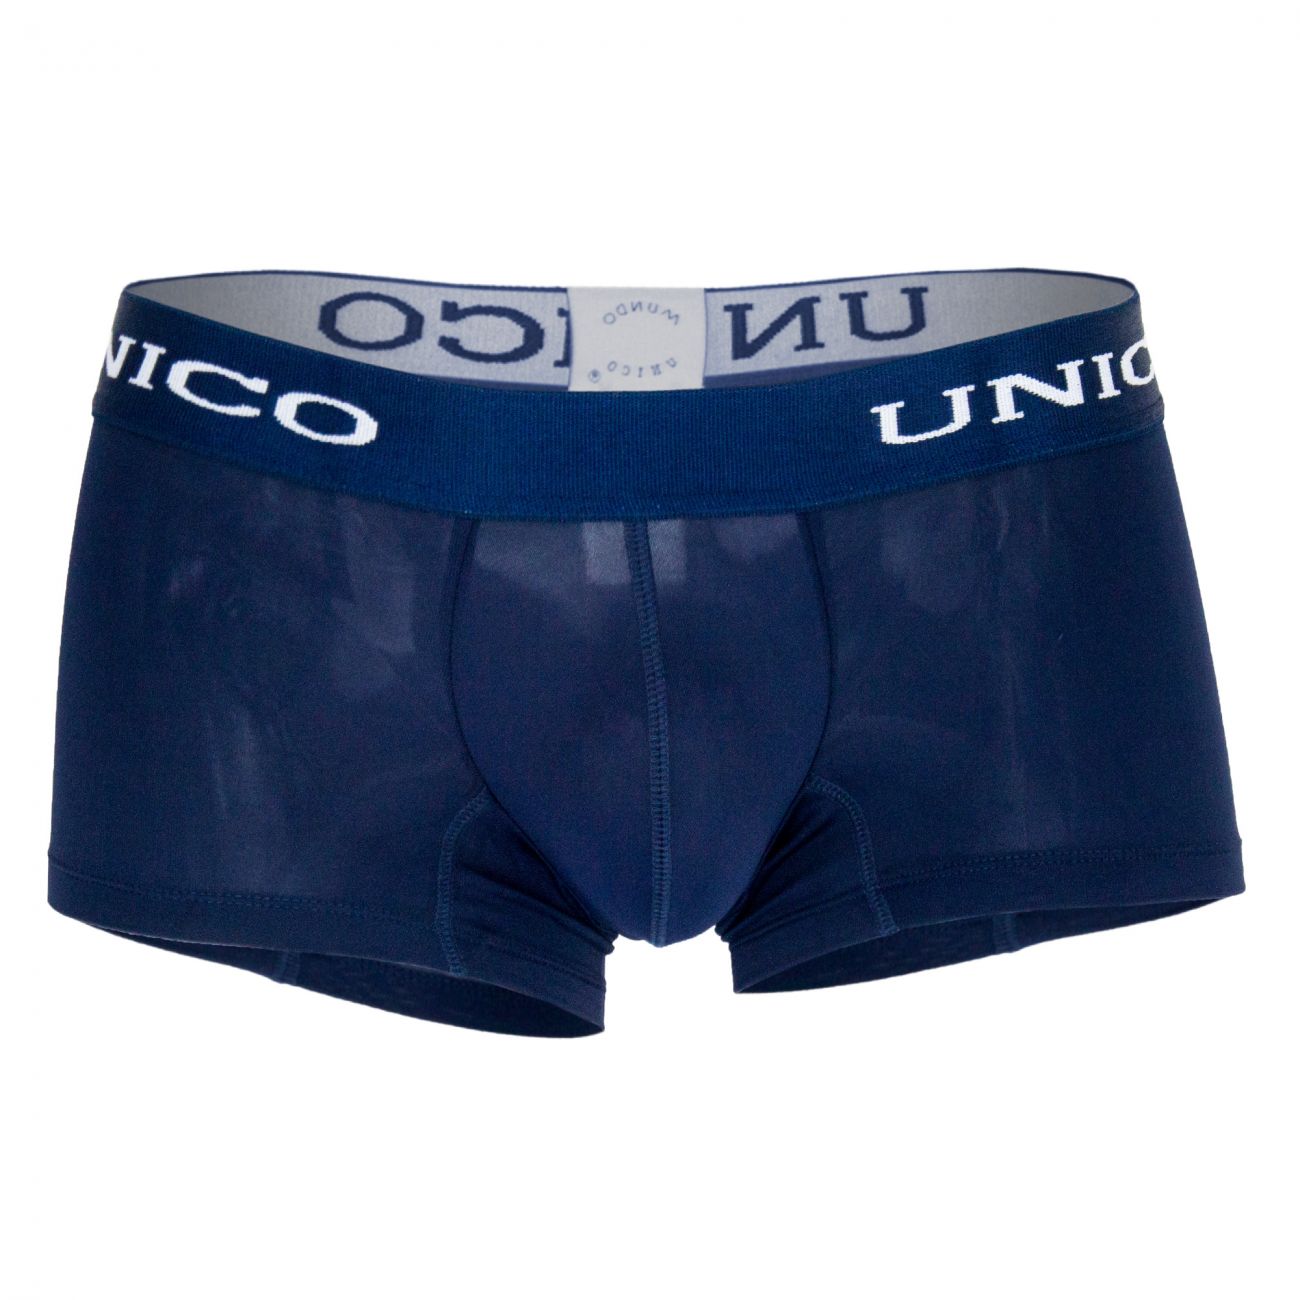 Unico 1200080382 Boxer Briefs Profundo Blue